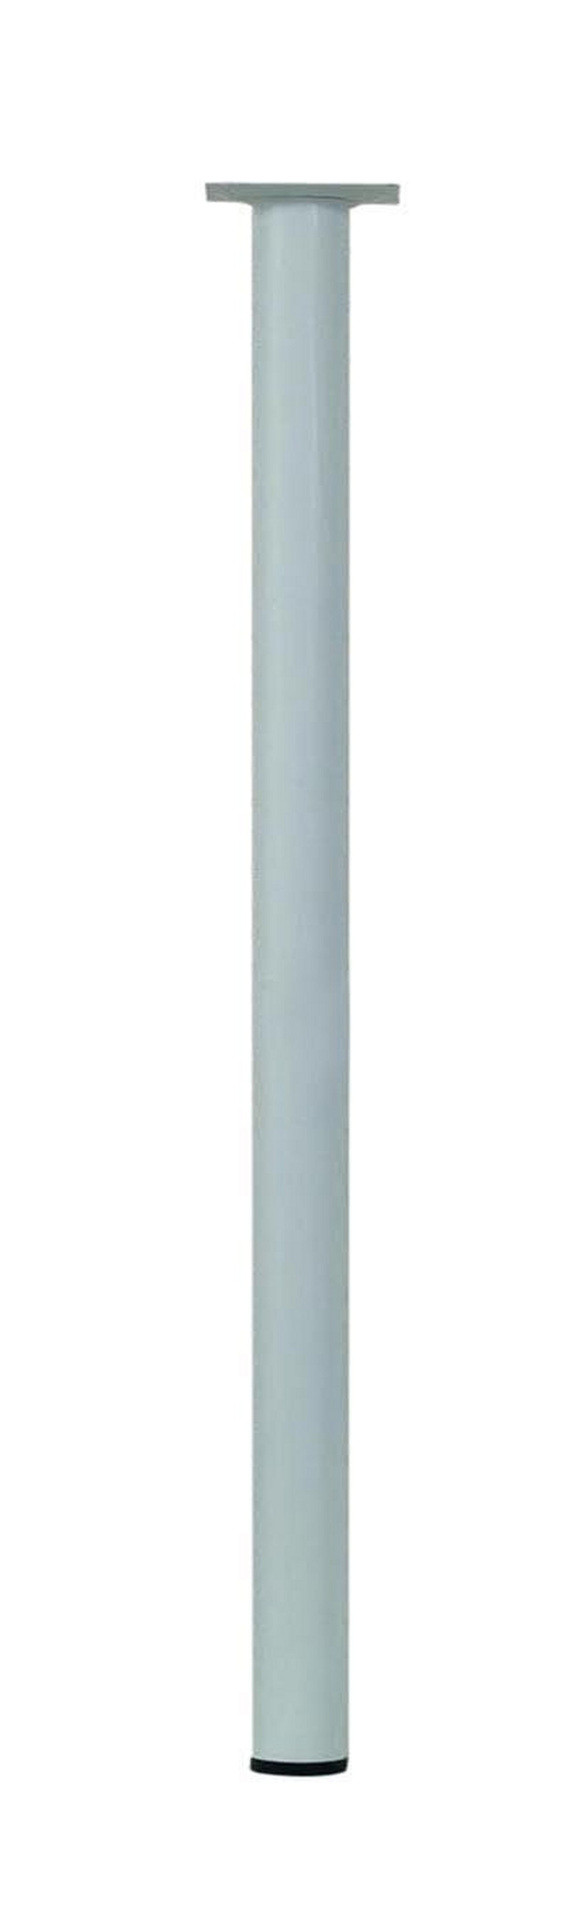 Pied de table basse cylindrique fixe acier époxy blanc, 70 cm